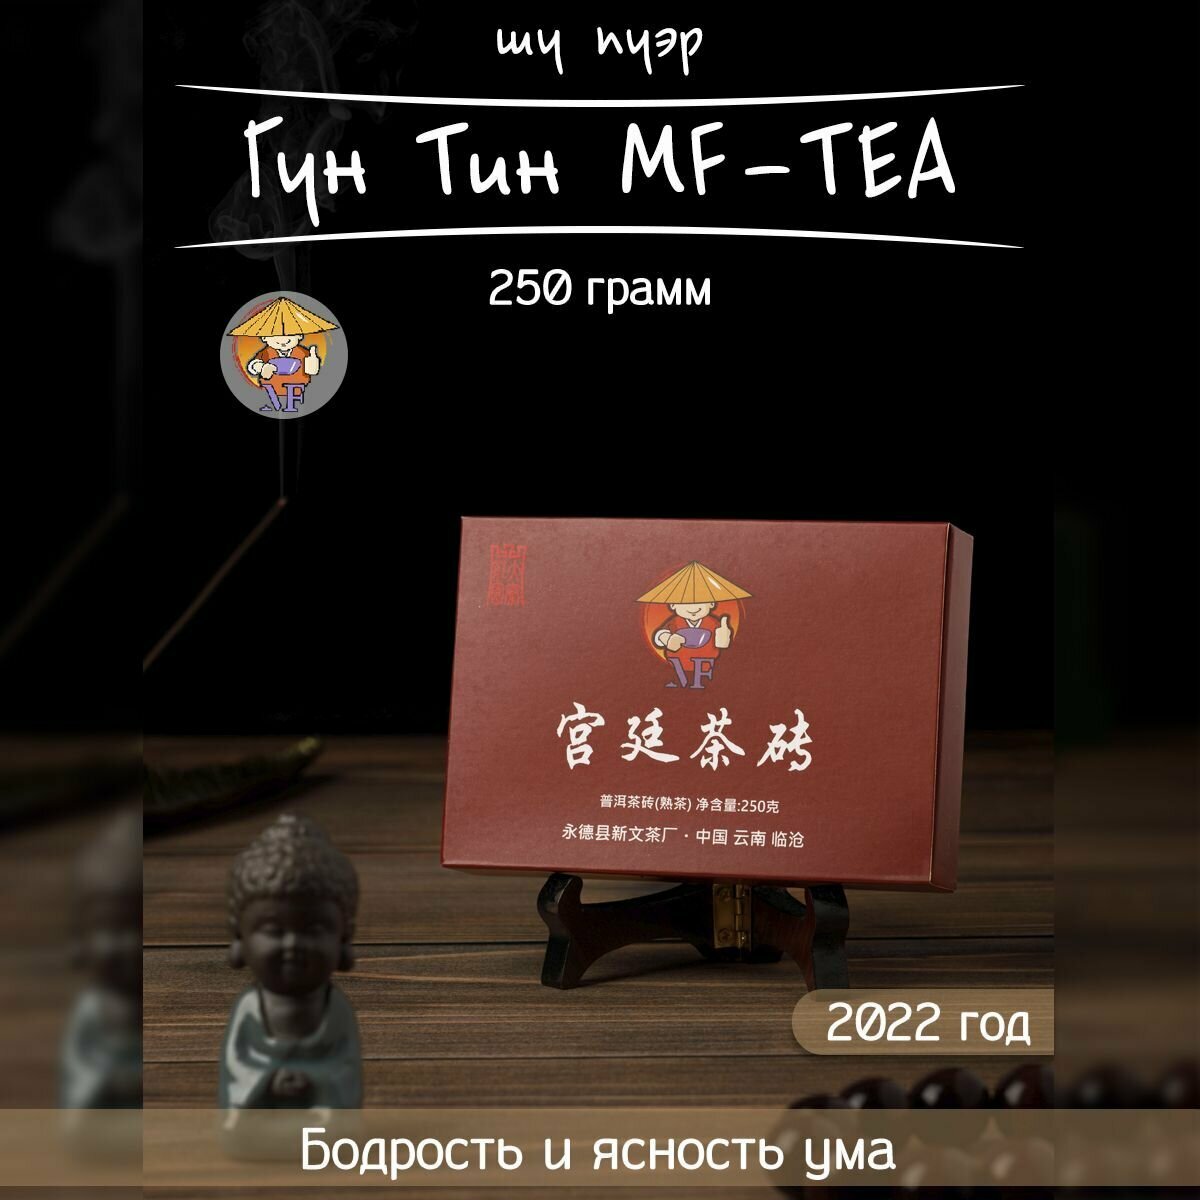 Чай Шу Пуэр Гун Тин MF-TEA, 2022 год, 250 гр, фабрика Синь Вэнь